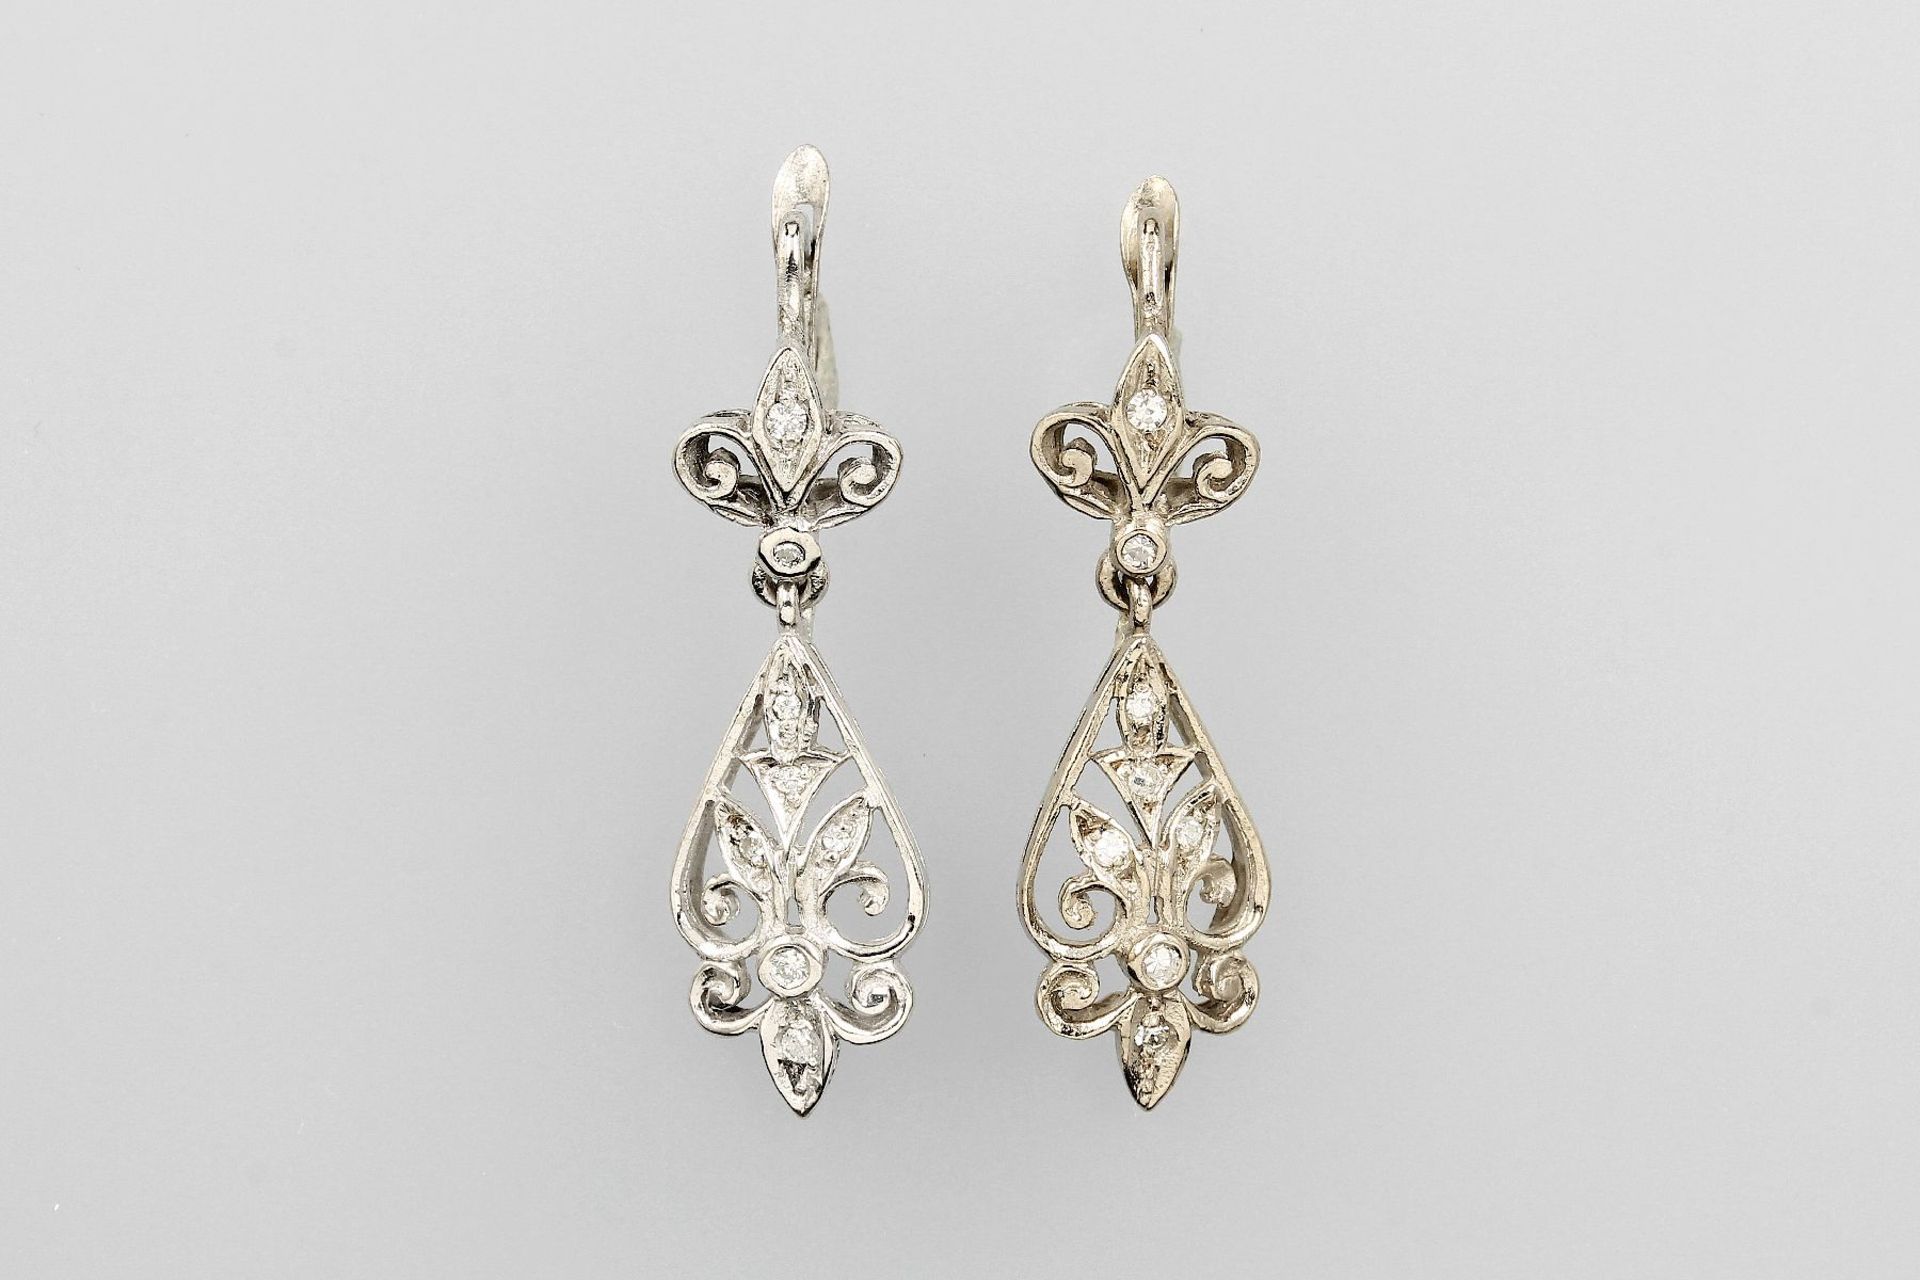 Paar 18 kt Gold Ohrhänger mit Diamanten, WG 750/000, florale Gestaltung, filigran, je 8Diamanten